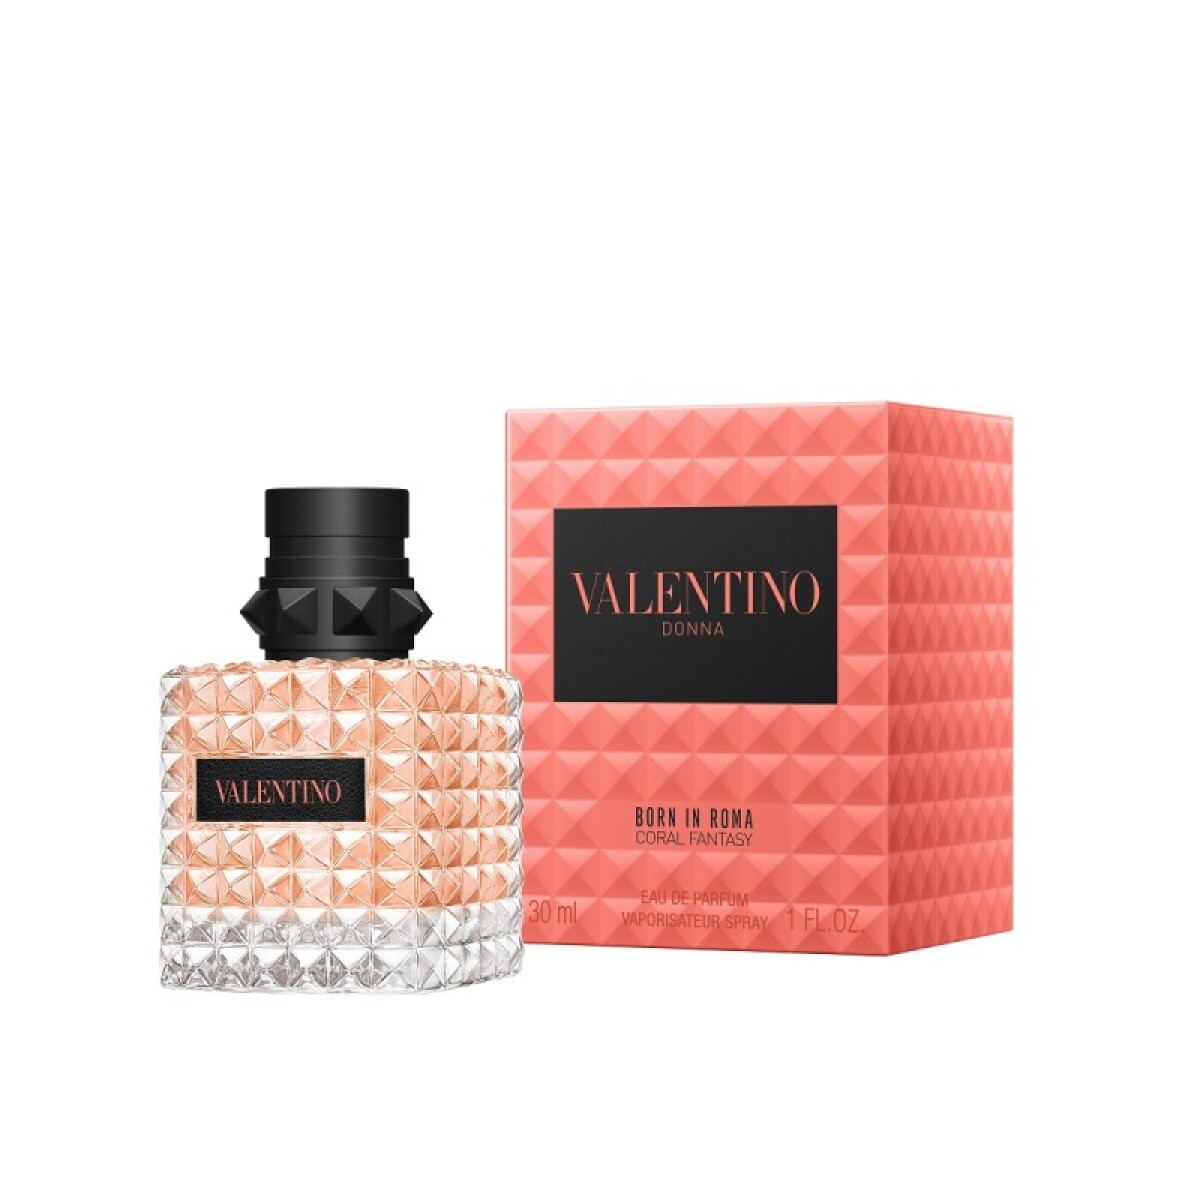 Valentino Born in Roma coral fantasy - 30 ml 